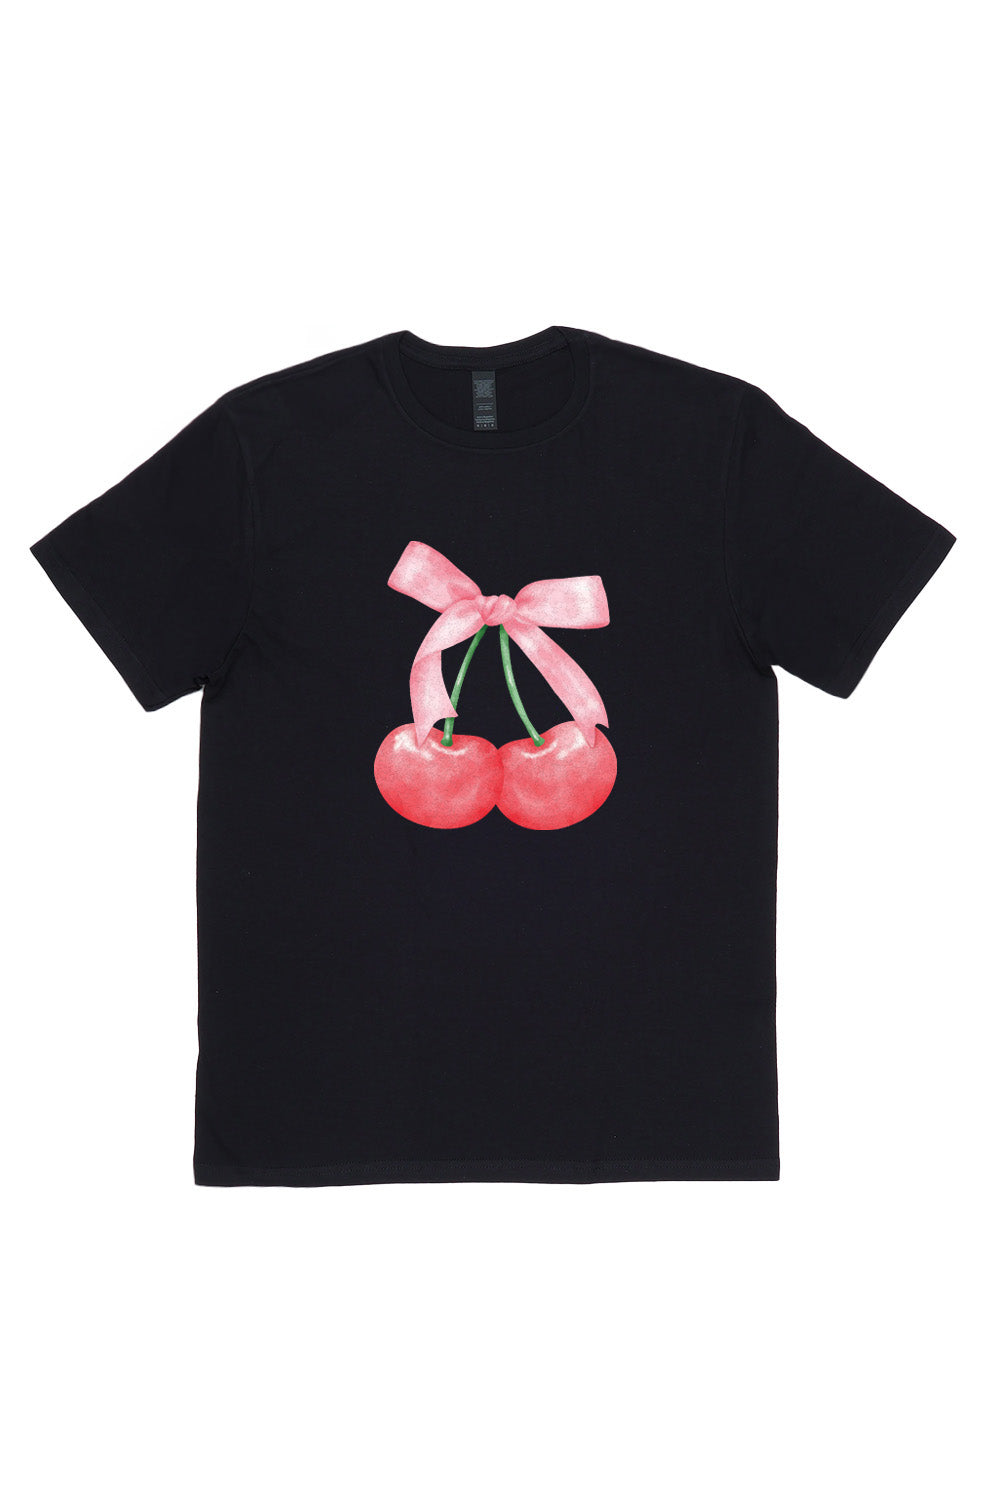 Twin Cherries Printed T-Shirt